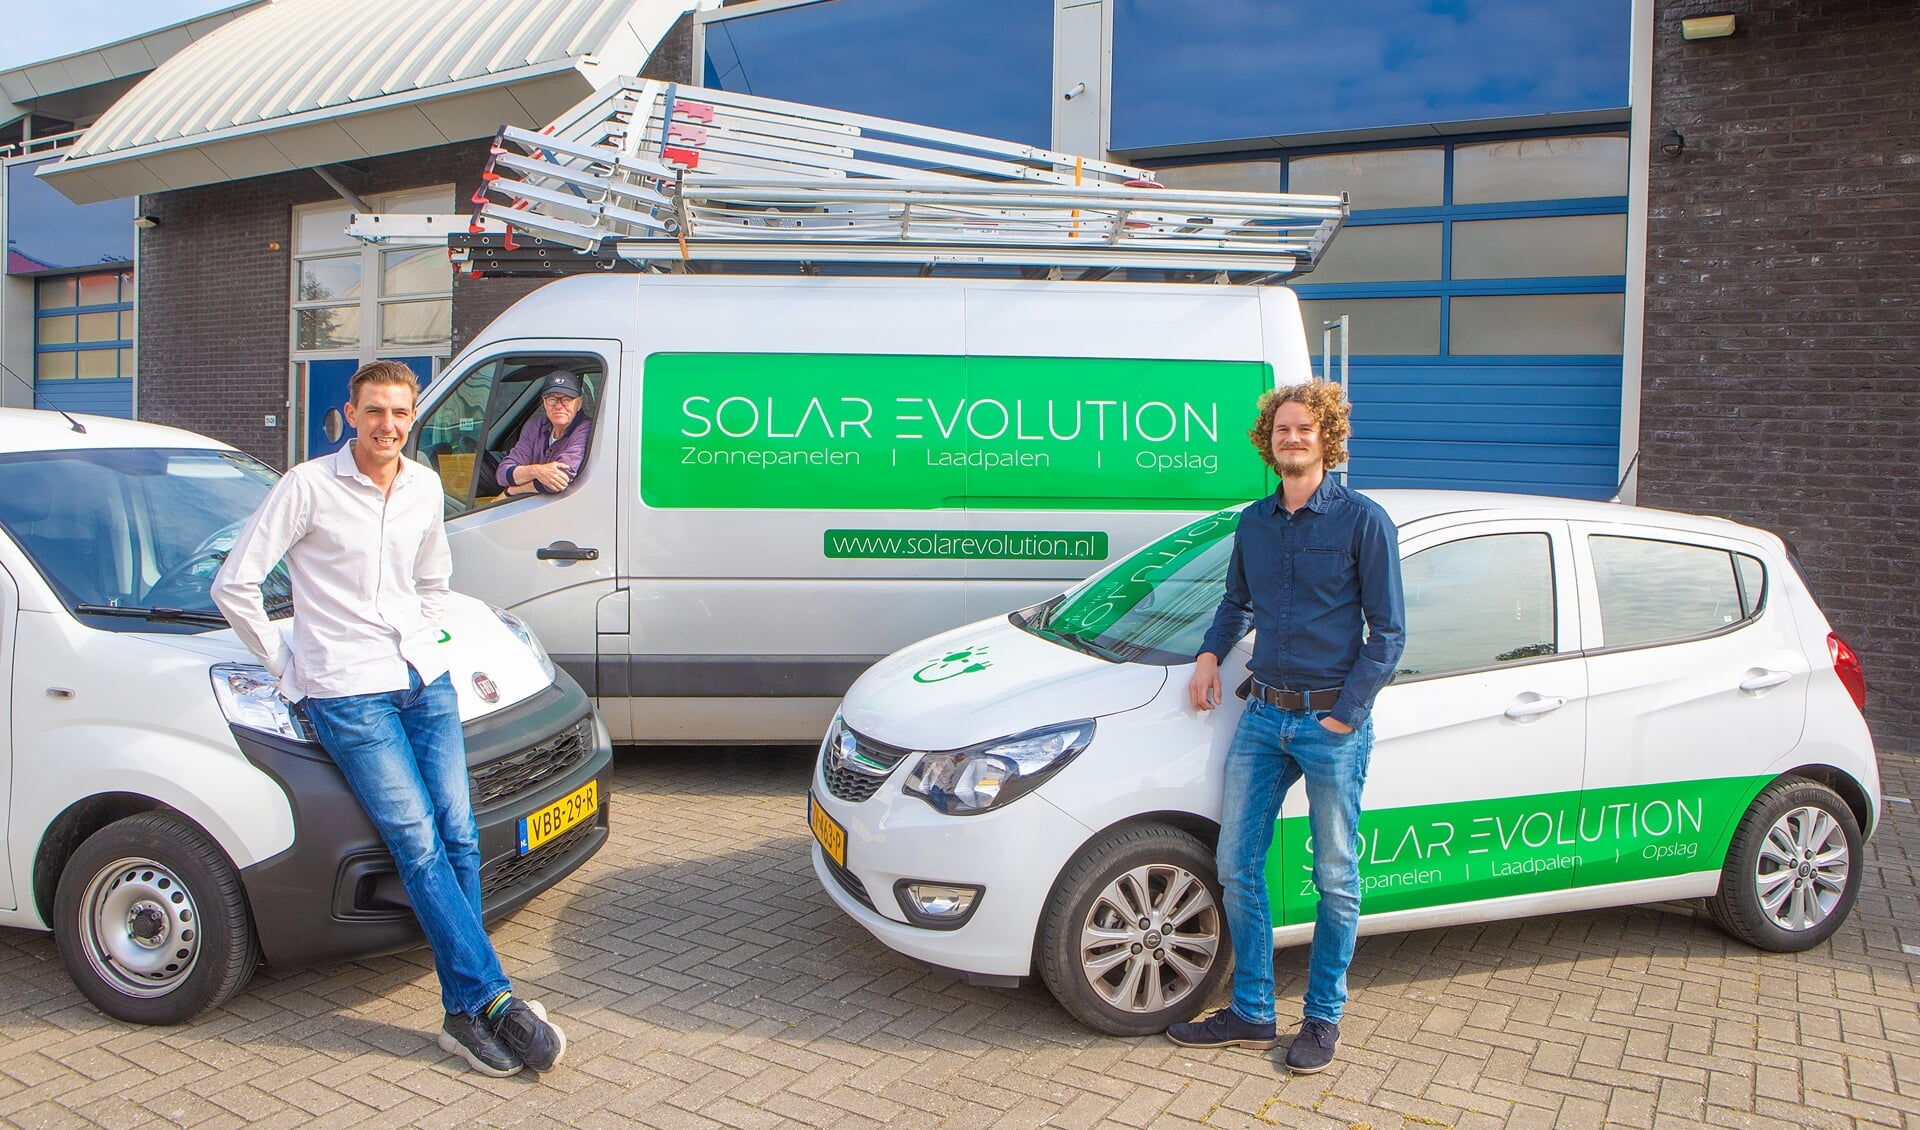 Paul Dirksen en Patrick van Spankeren investeren met Solar Evolution in groene energie.